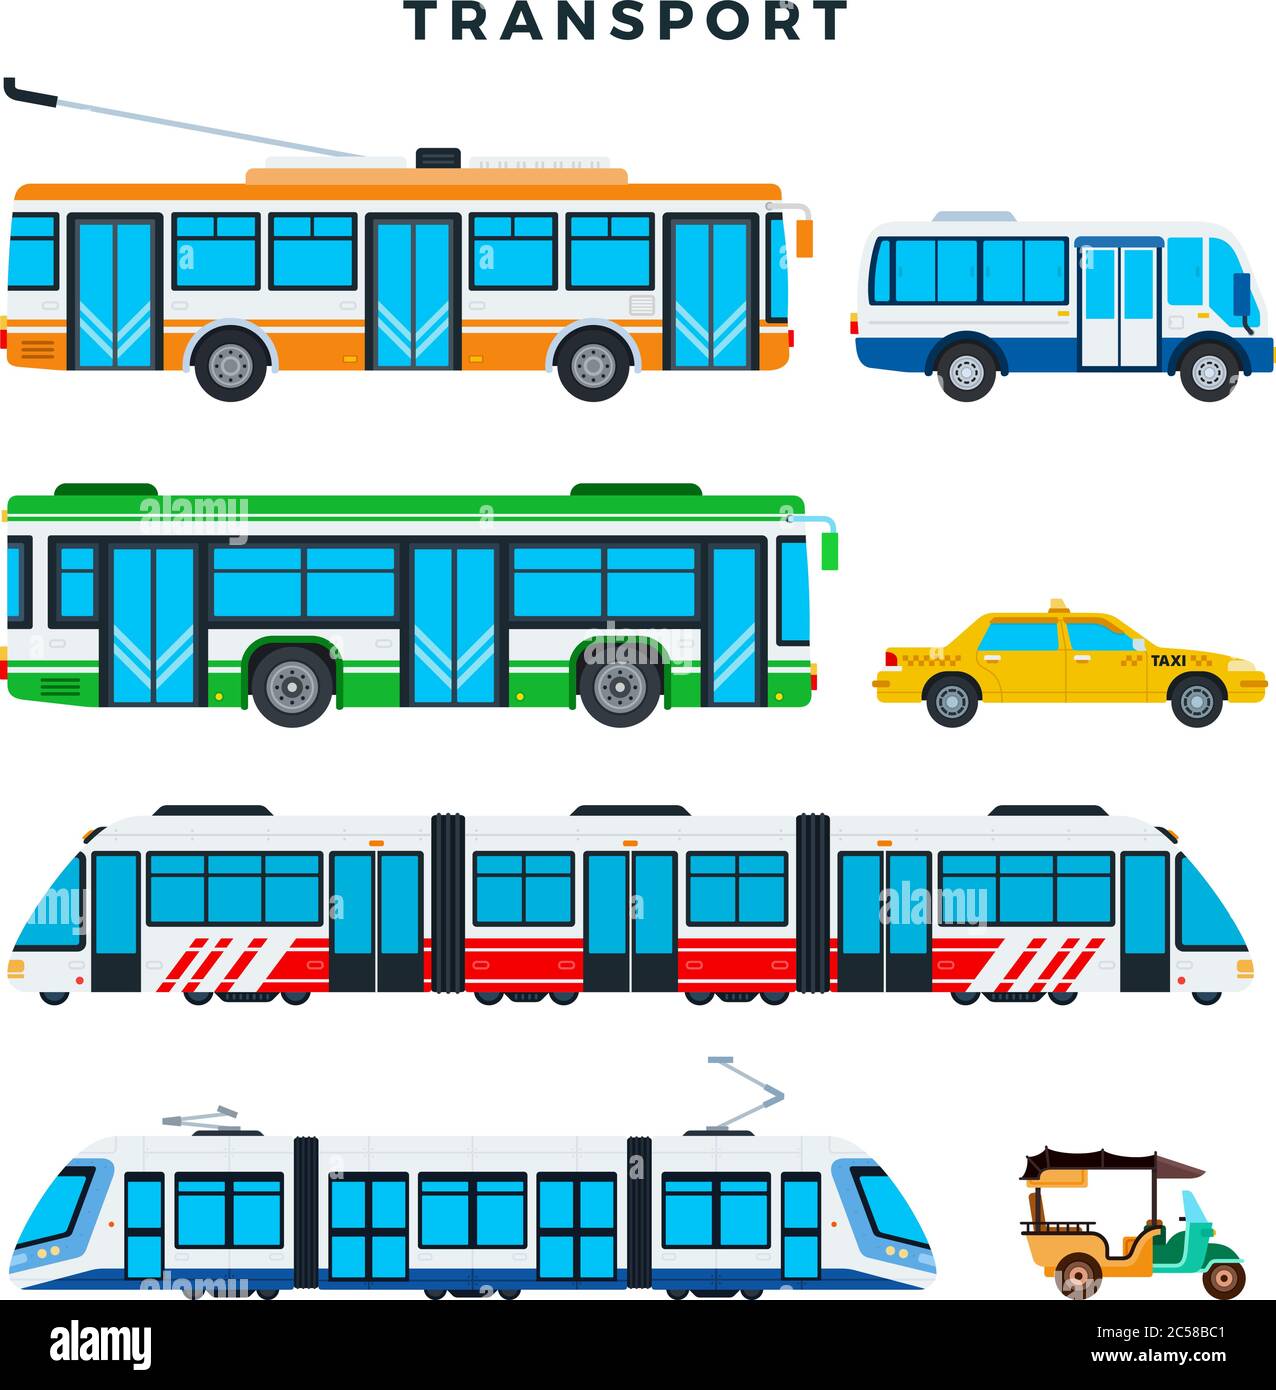 Sammlung von öffentlichen Verkehrsmitteln. Stadtverkehr, Vektor-Icons. Abbildung in flacher Ausführung. Stock Vektor